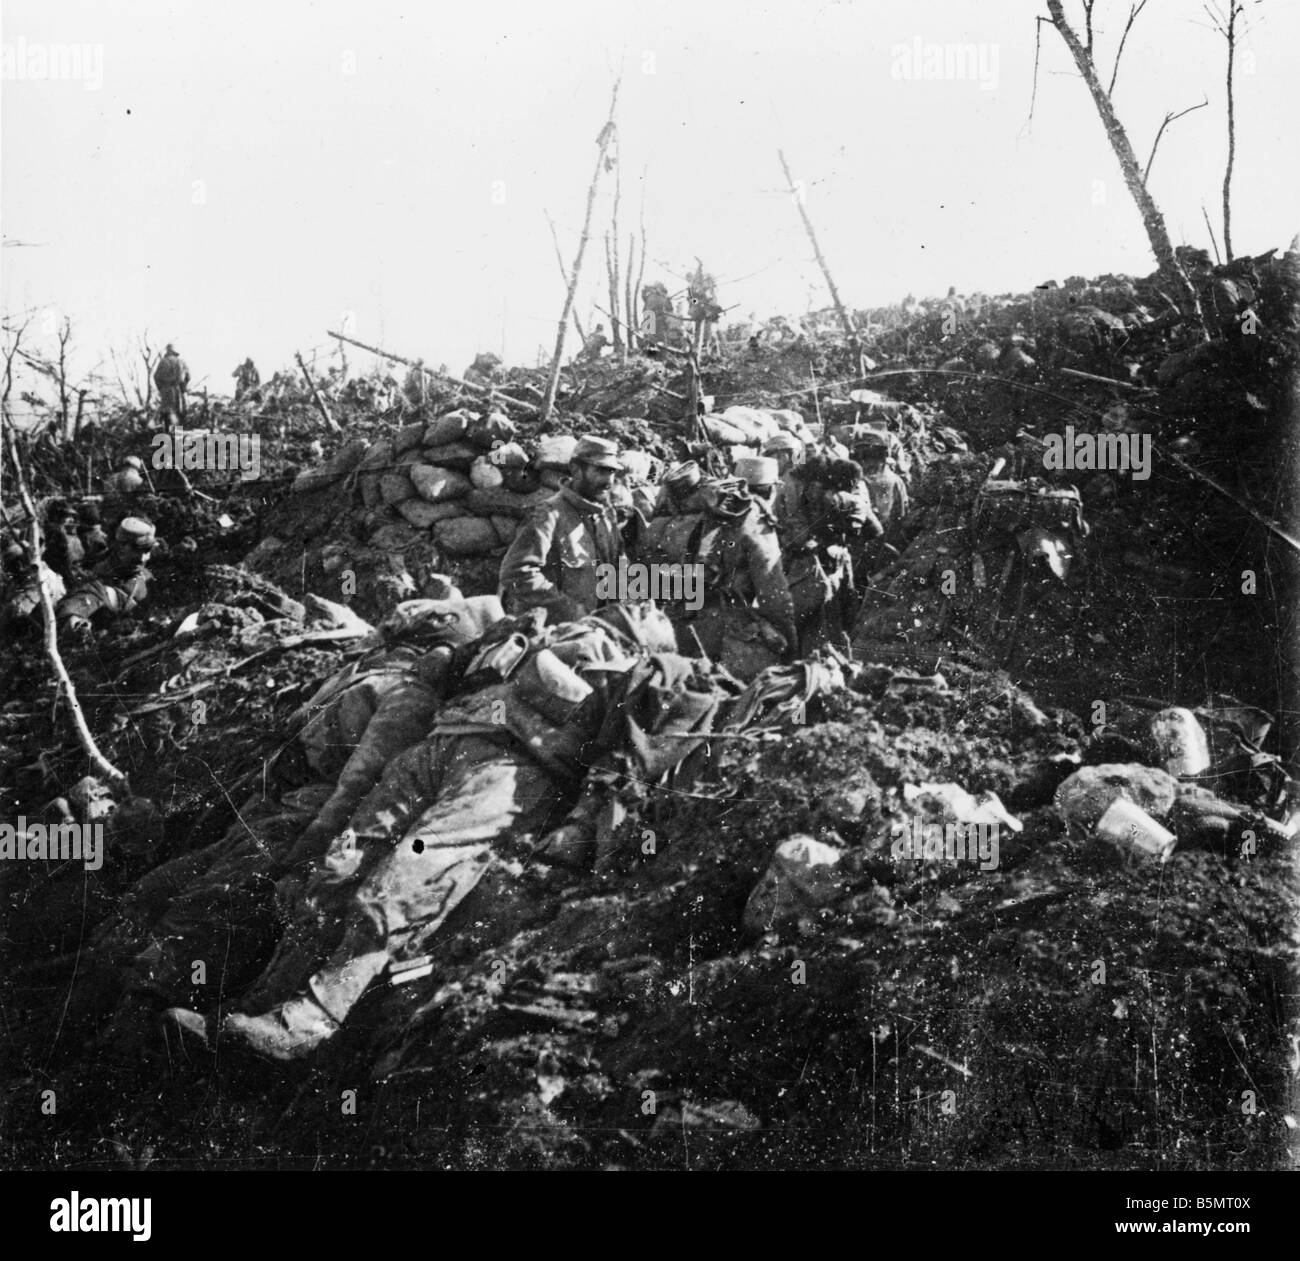 9FK 1915 4 0 A1 3 E Schlacht bei Eparges Franch Gegenangriff Übersetzung Krieg I Western Front Schlacht von Les Eparges Dep Maas 18 km Southw Stockfoto